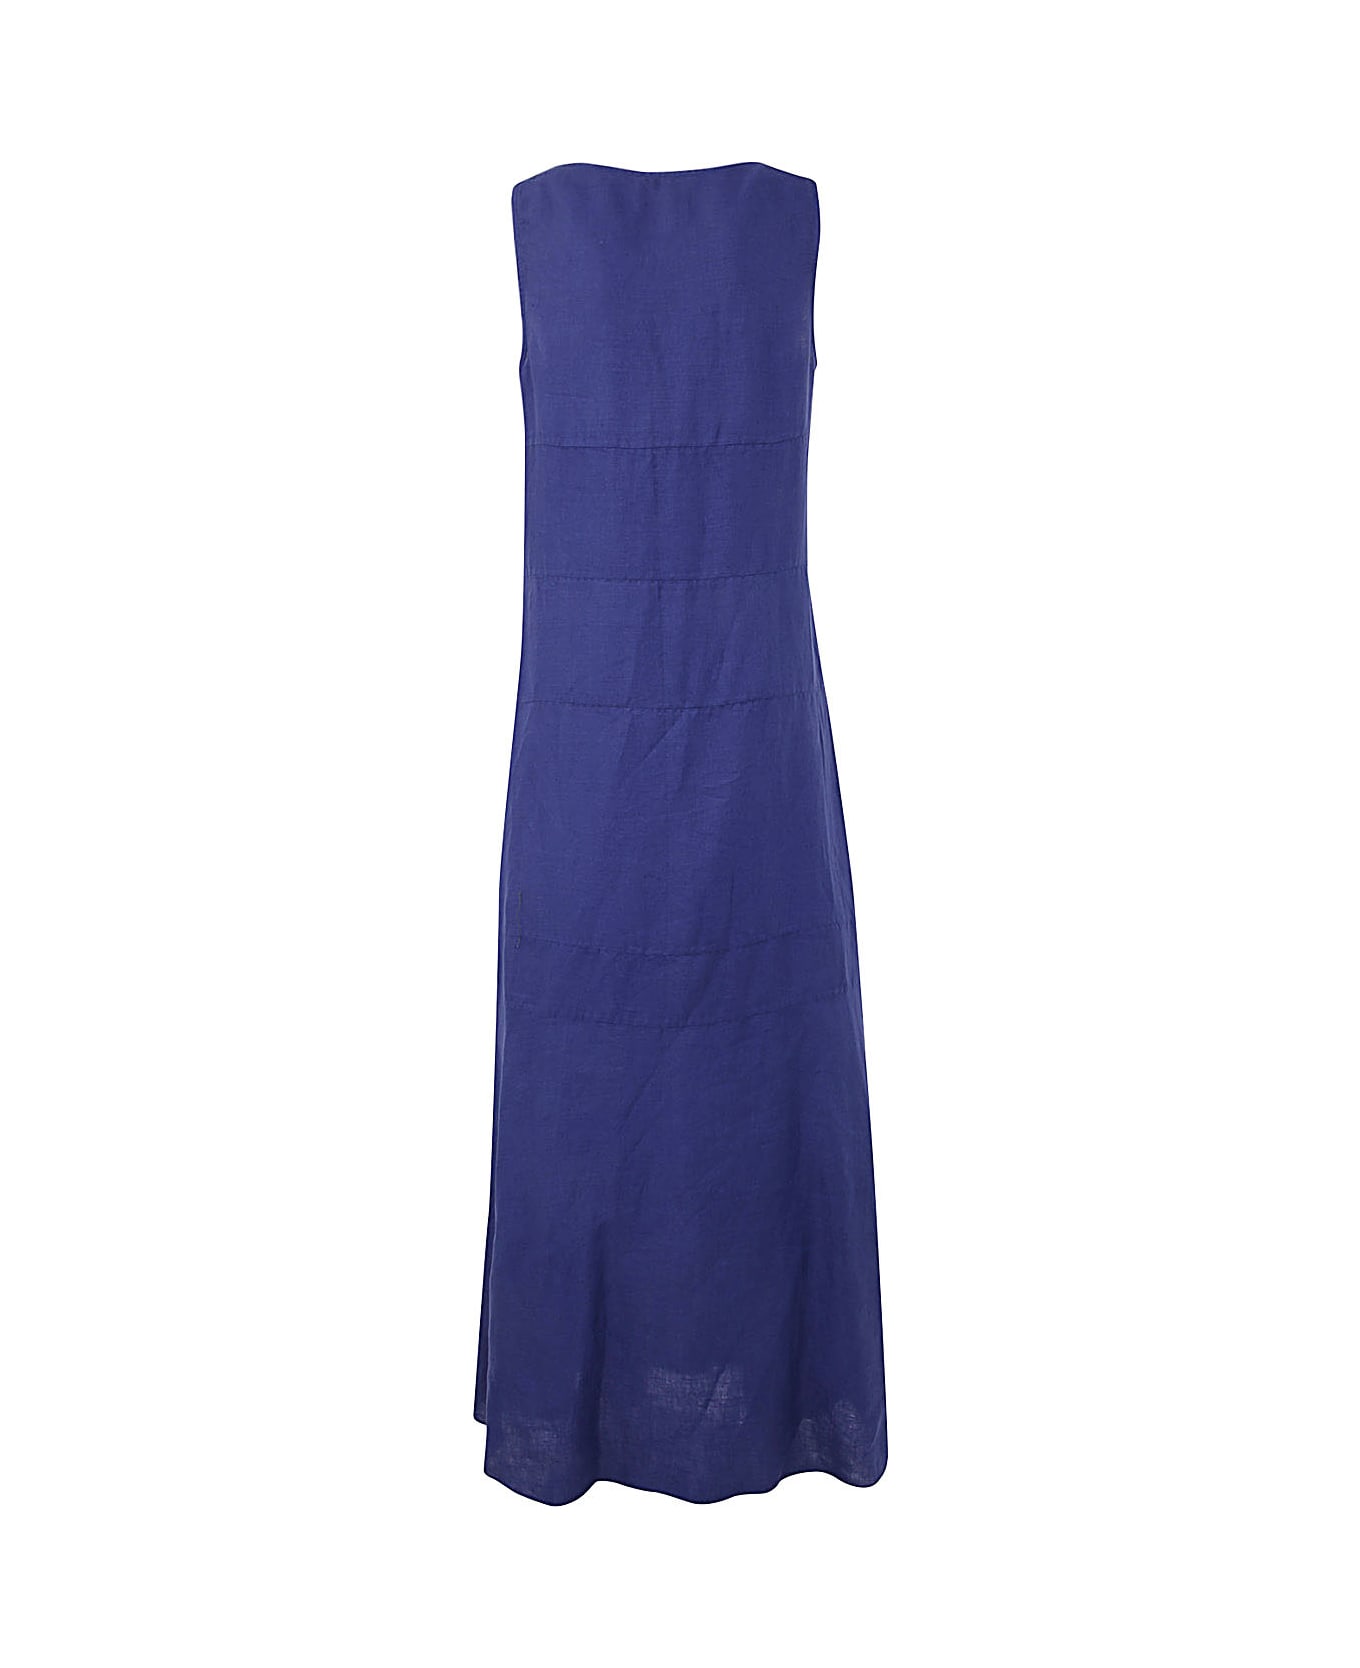 Aspesi Mod 2955 Dress - Light Blue